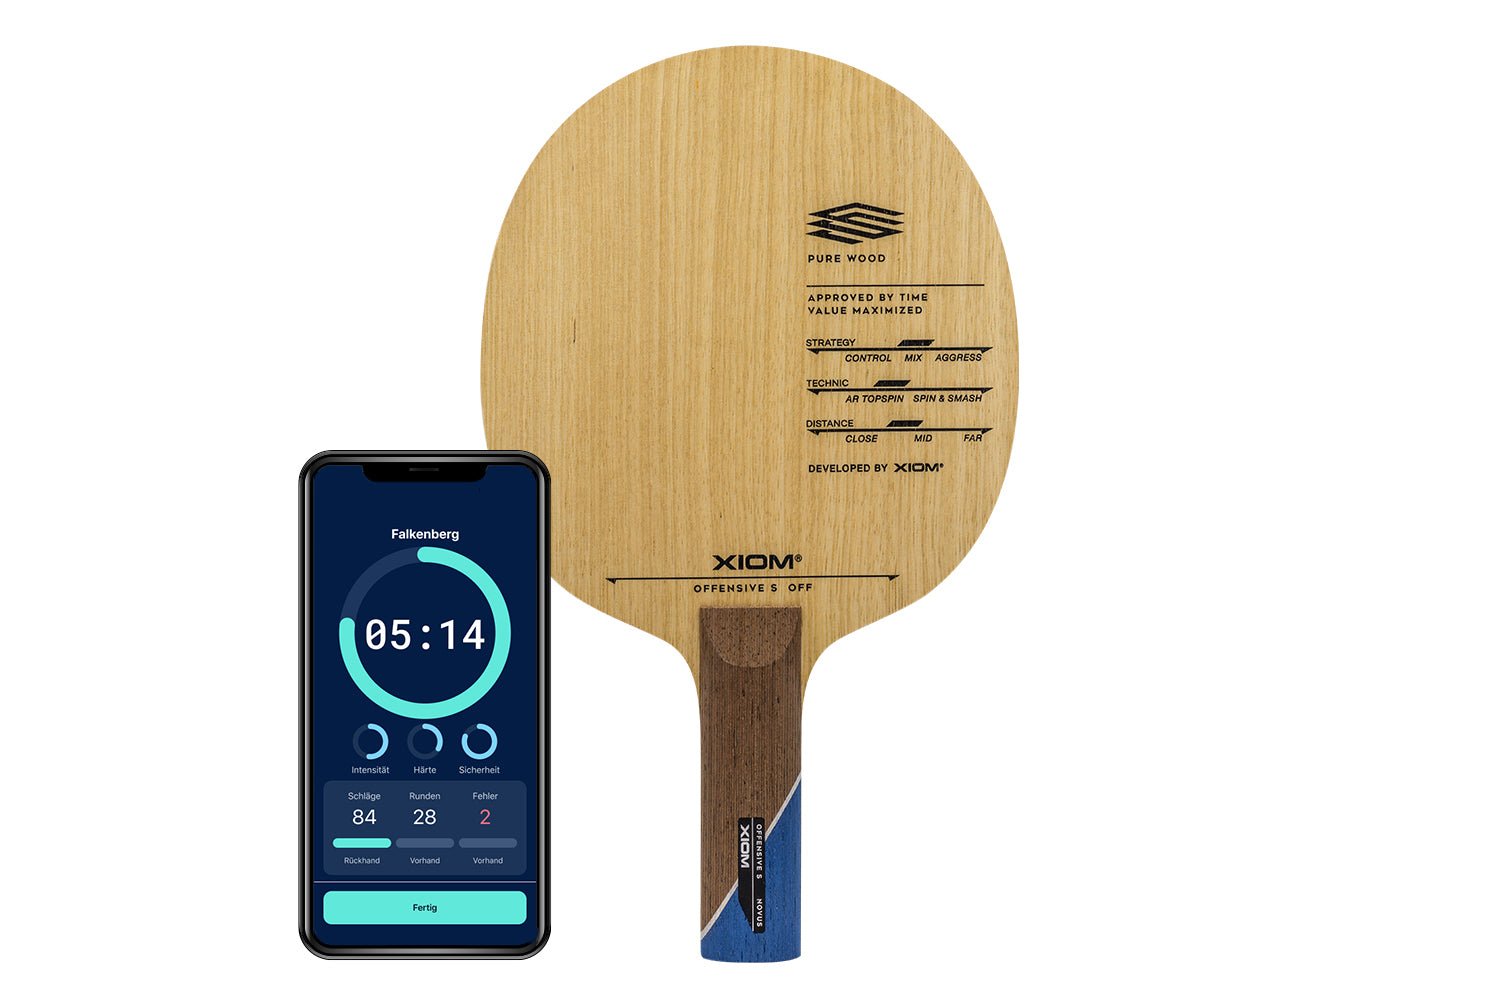 Xiom Offensive Off Tischtennisschläger mit geradem Griff und Smartphone zeigt Daten des Schlägers vor weißem Hintergrund